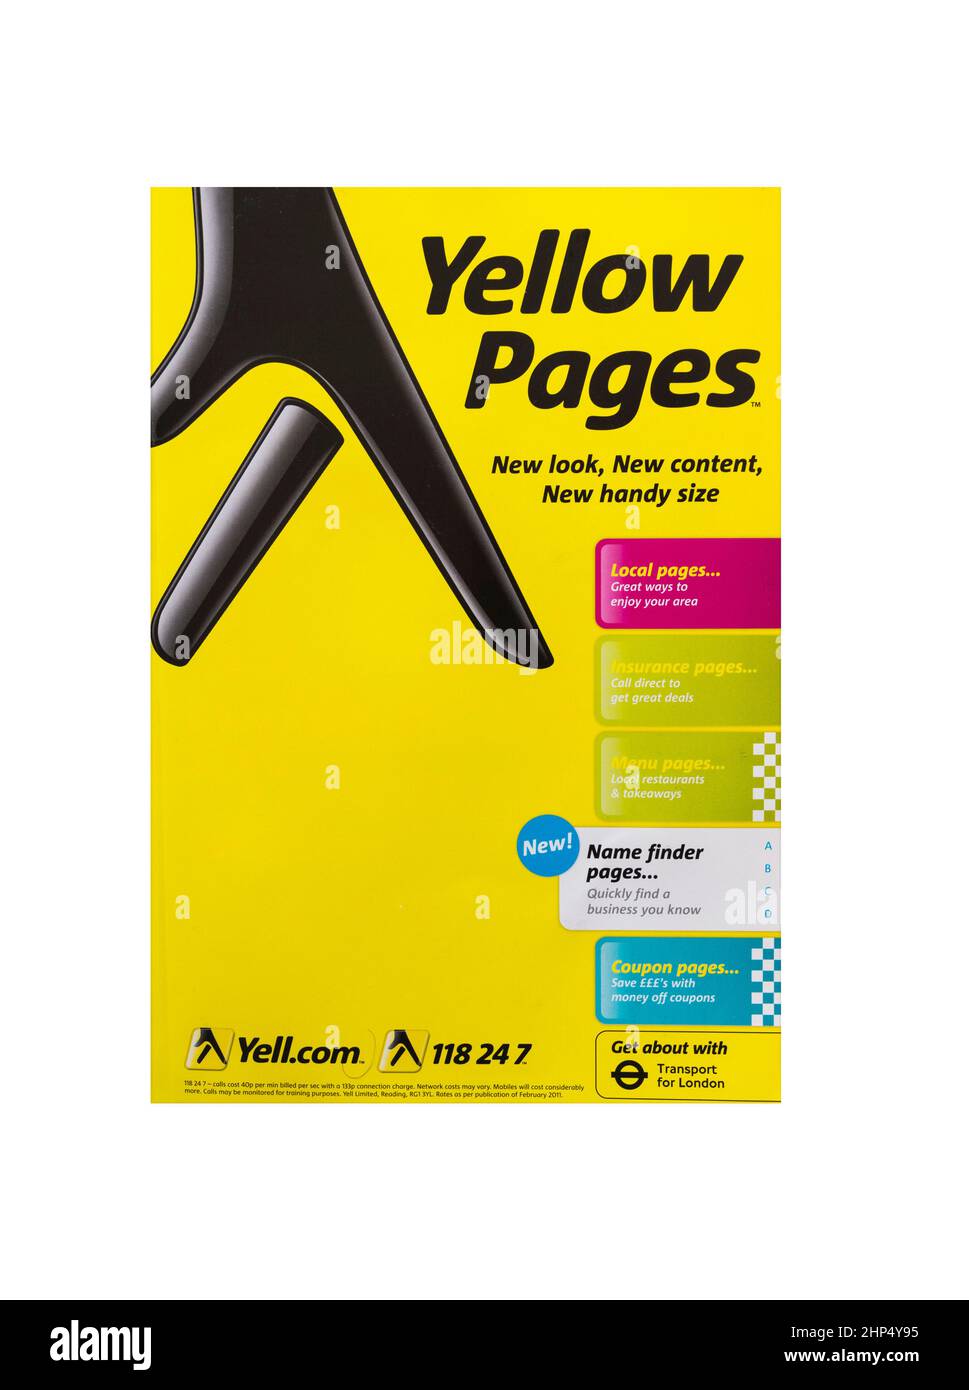 Yellow Pages, das einst wichtige Telefonverzeichnis für Unternehmen und Haushalte, stellte 2019 nach 51 Jahren die Produktion ein Stockfoto